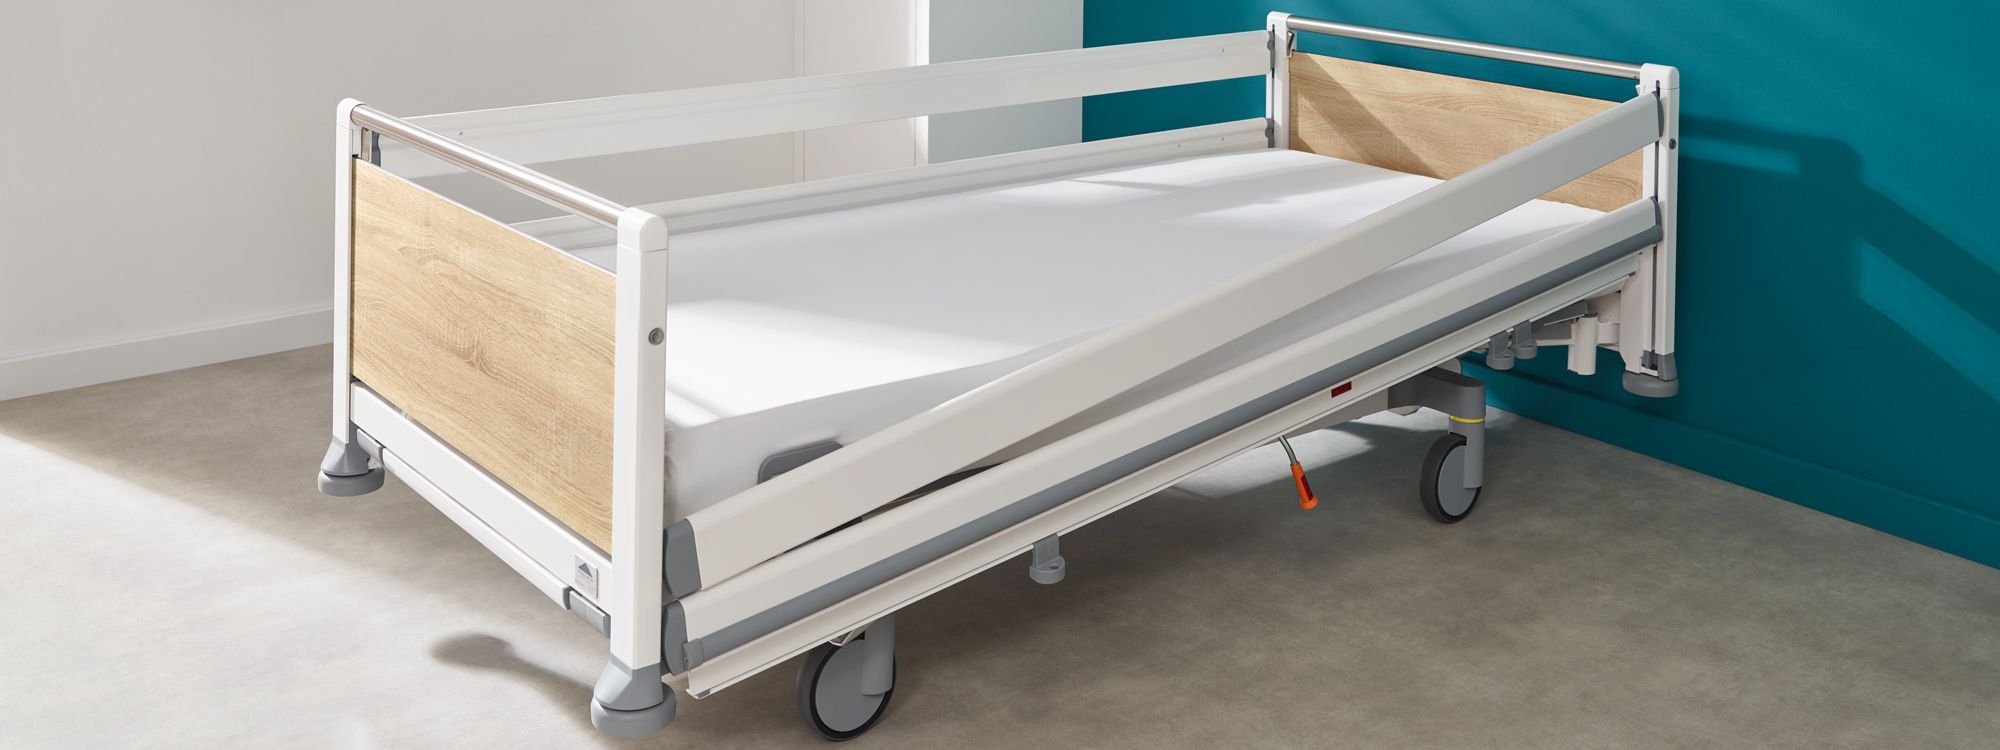 Réglage en diagonale du système de protection à barreaux continus sur le lit hospitalier Seta pro